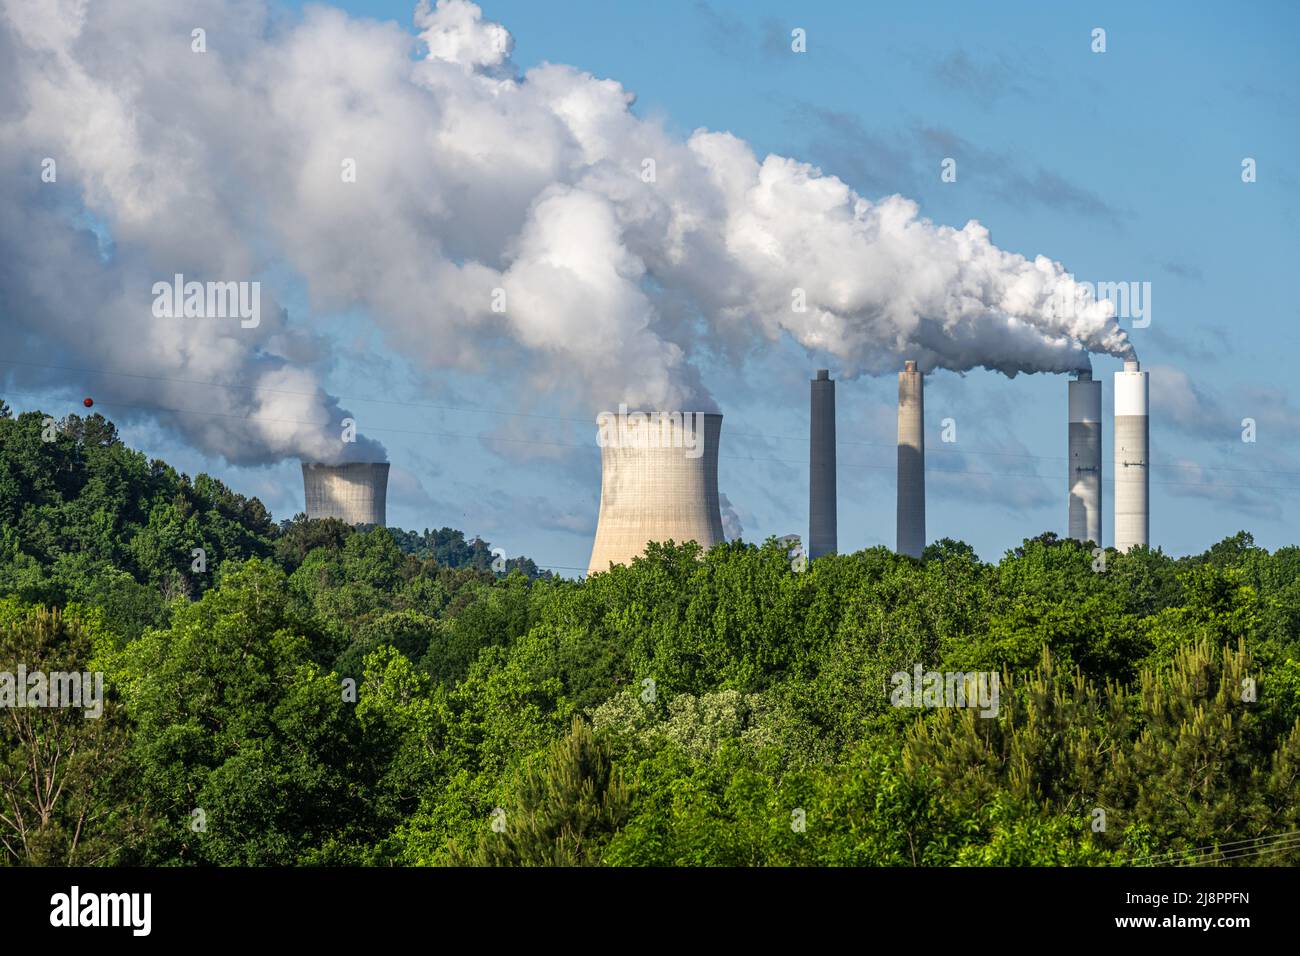 La planta de generación eléctrica James H. Miller Jr., alimentada con carbón, de Alabama Power Company, está situada cerca de Birmingham, en West Jefferson, Alabama. (EE. UU.) Foto de stock